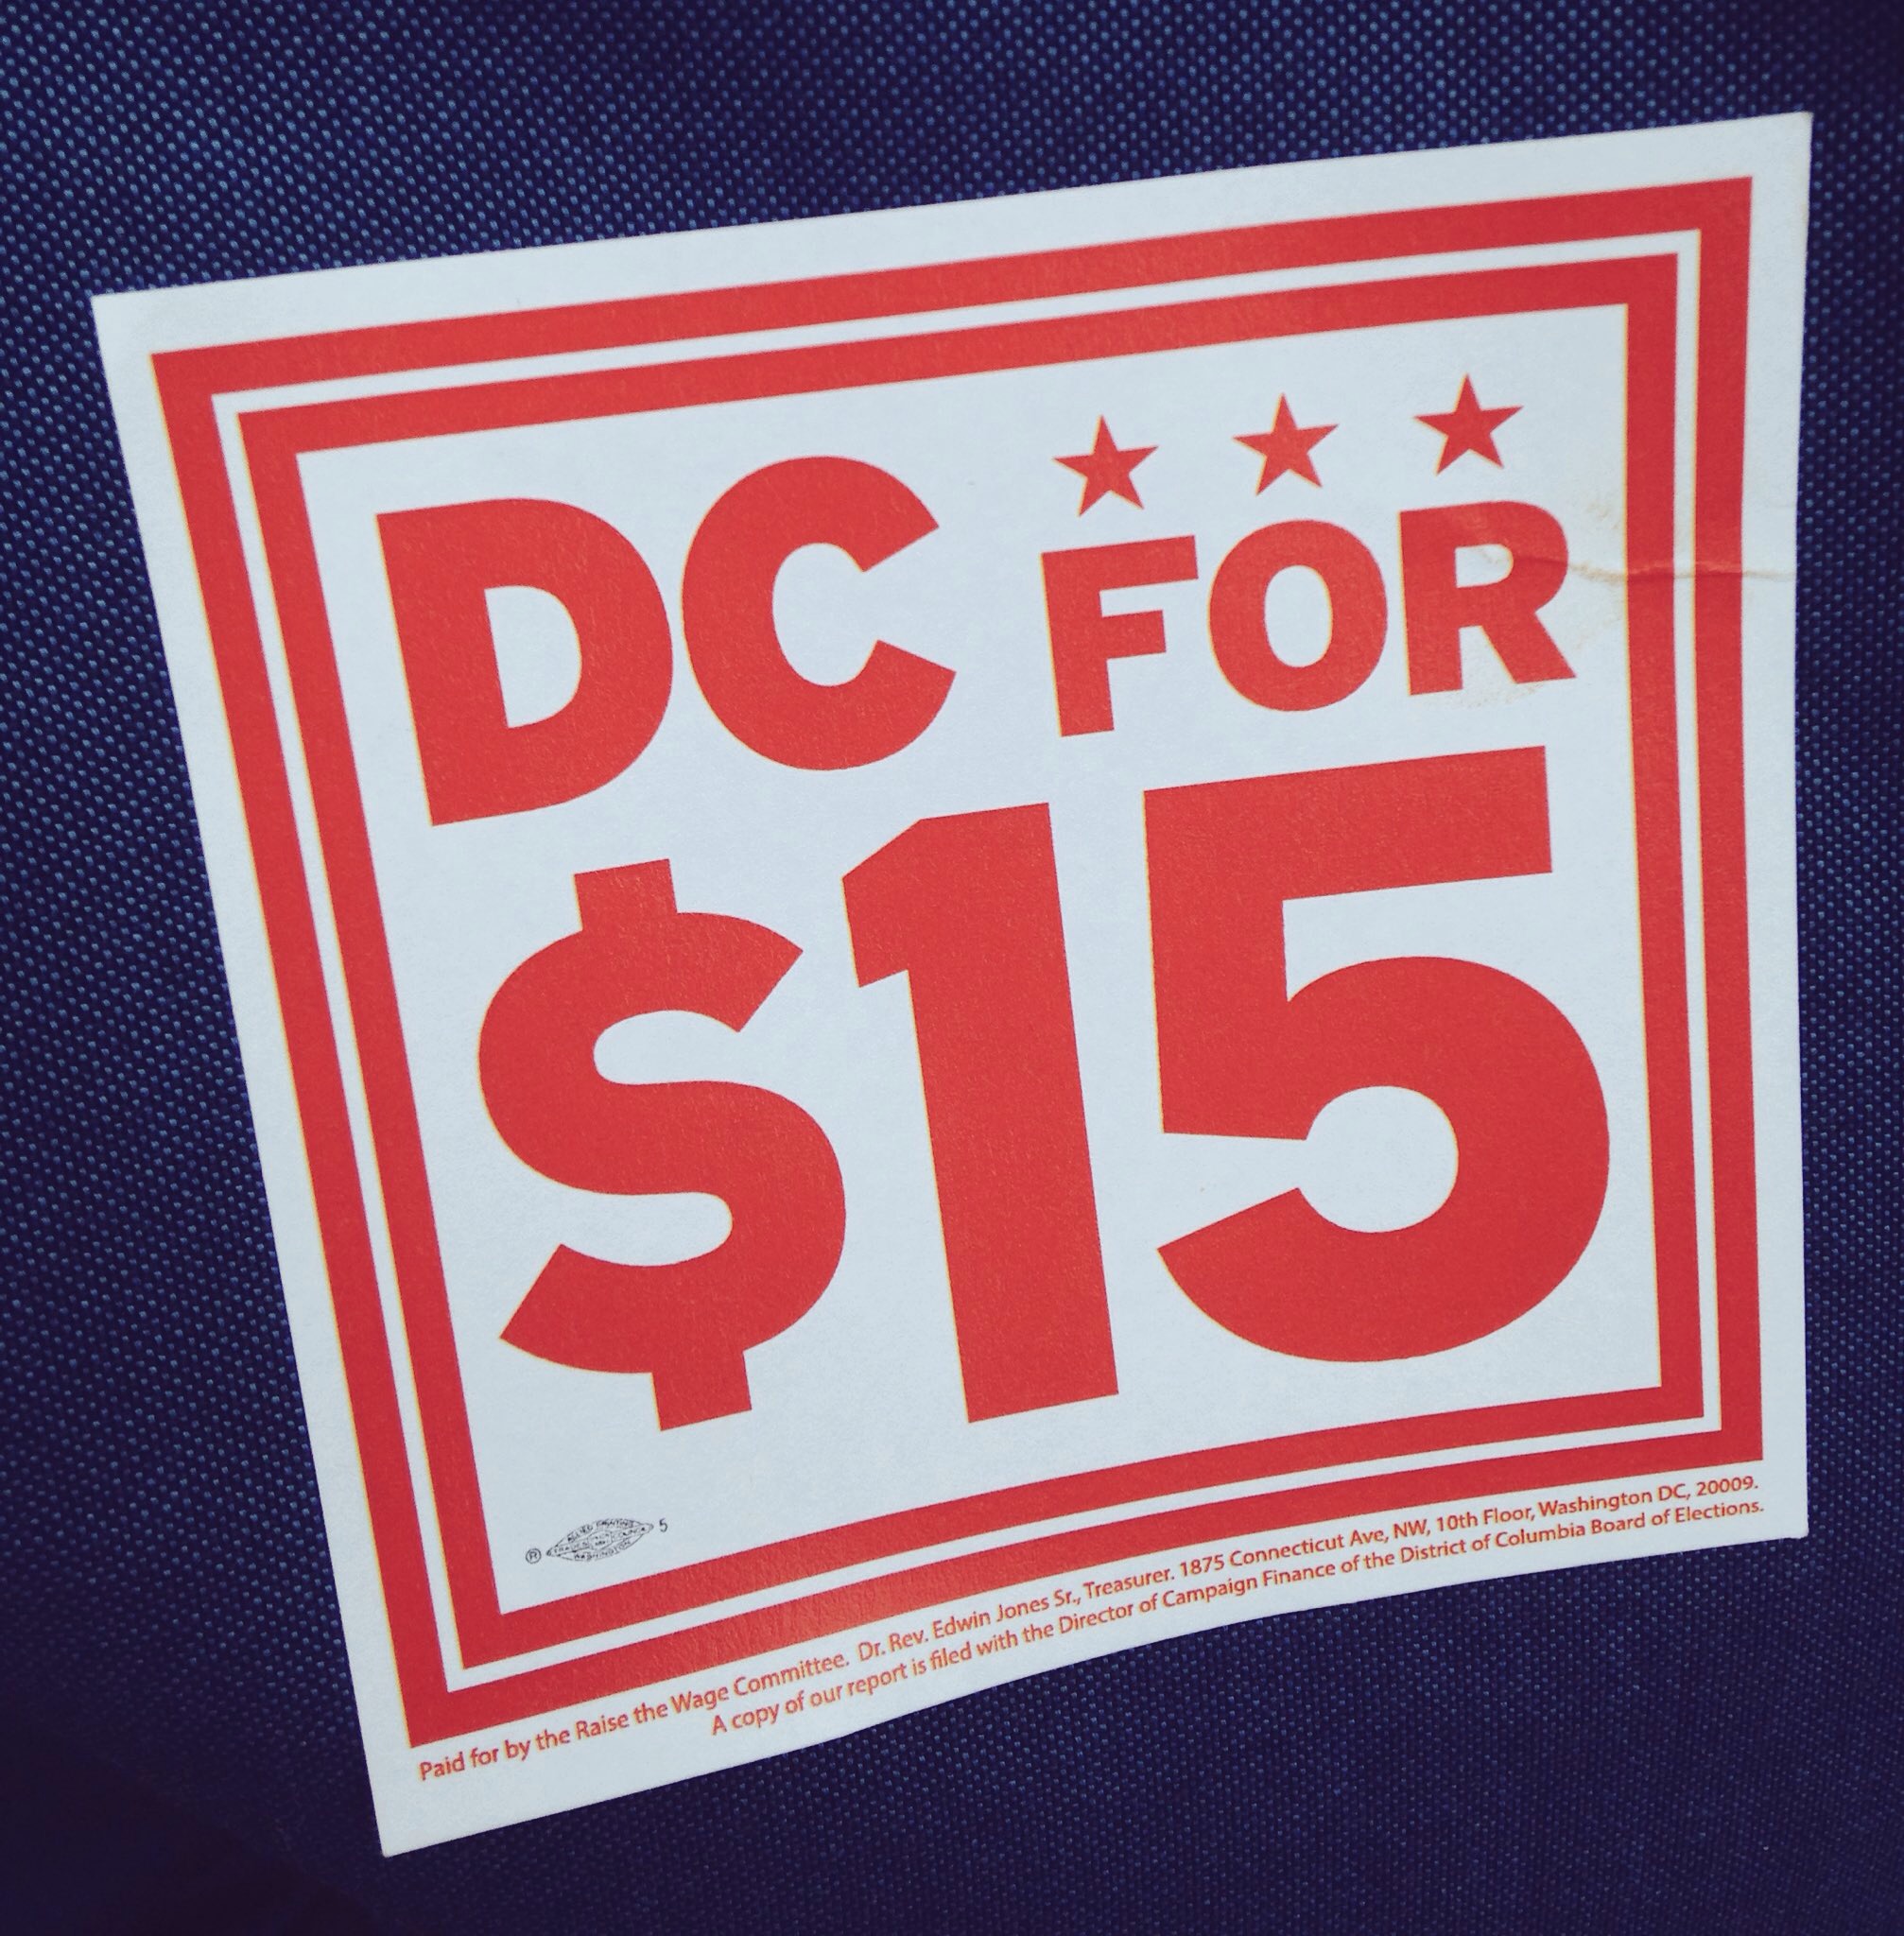 District of Columbia Set to Enact $15 Minimum Wage